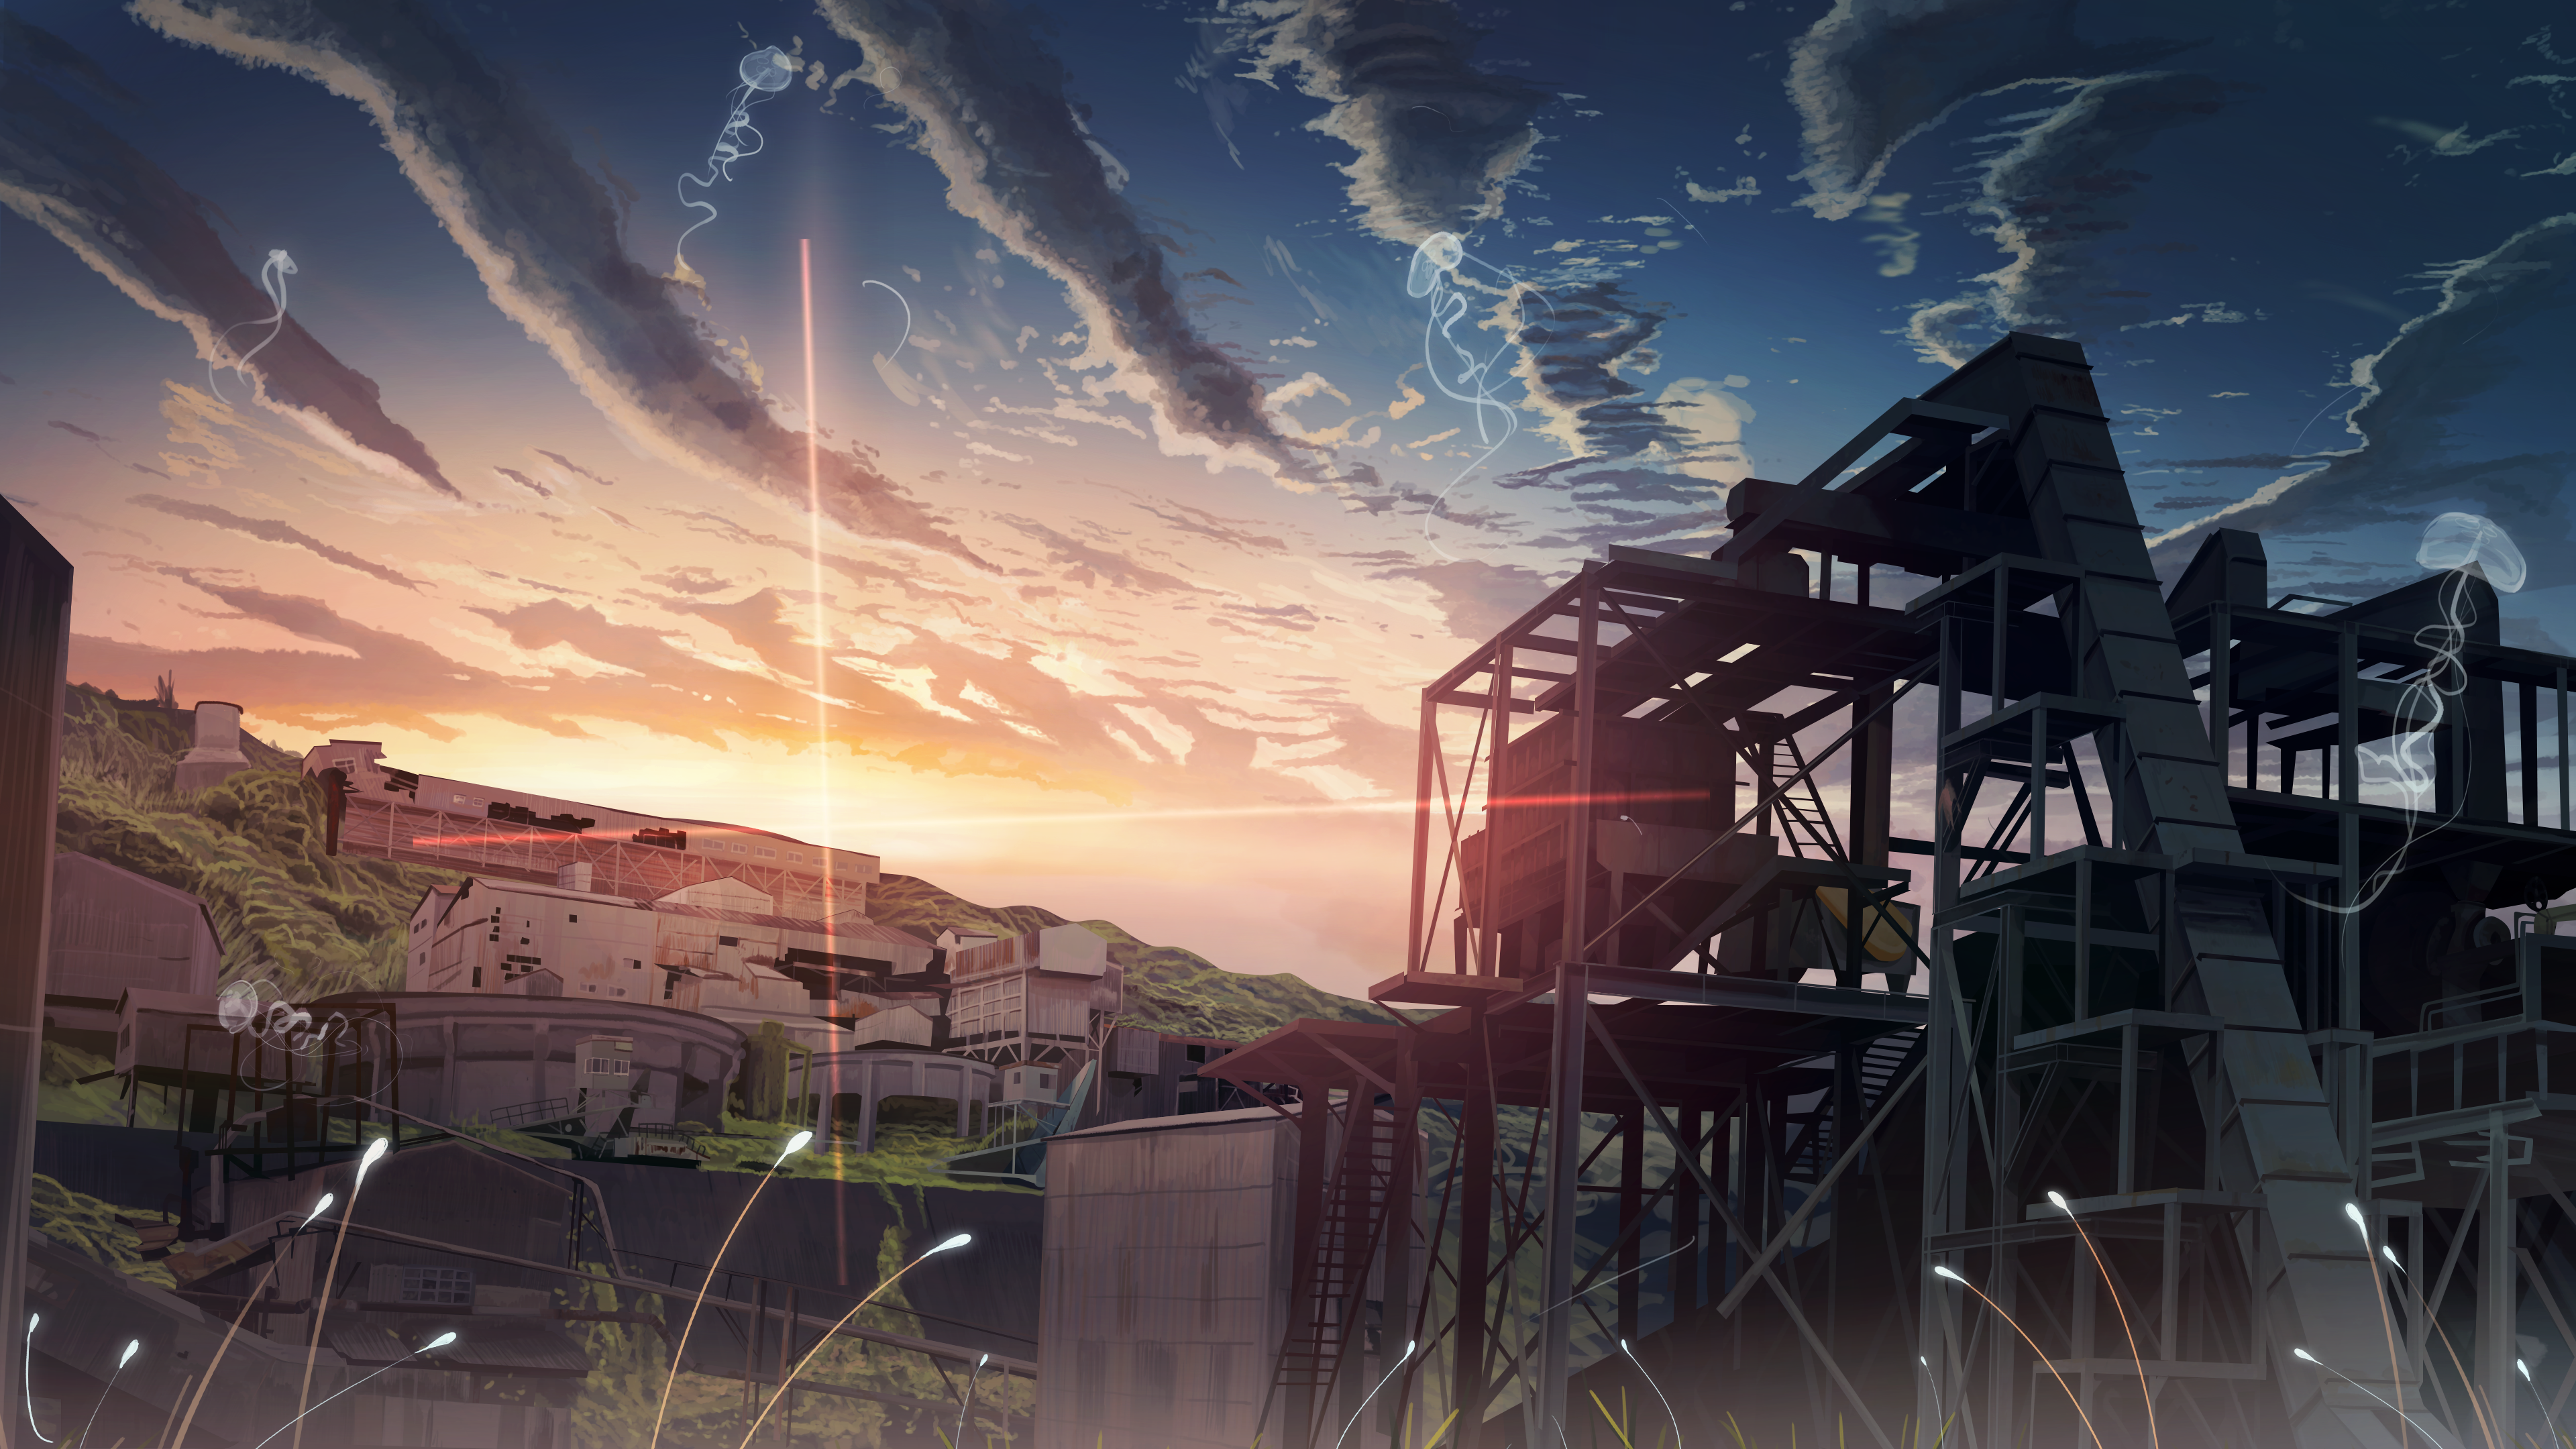 Anime 3840x2160 dusk anime city sunset moescape